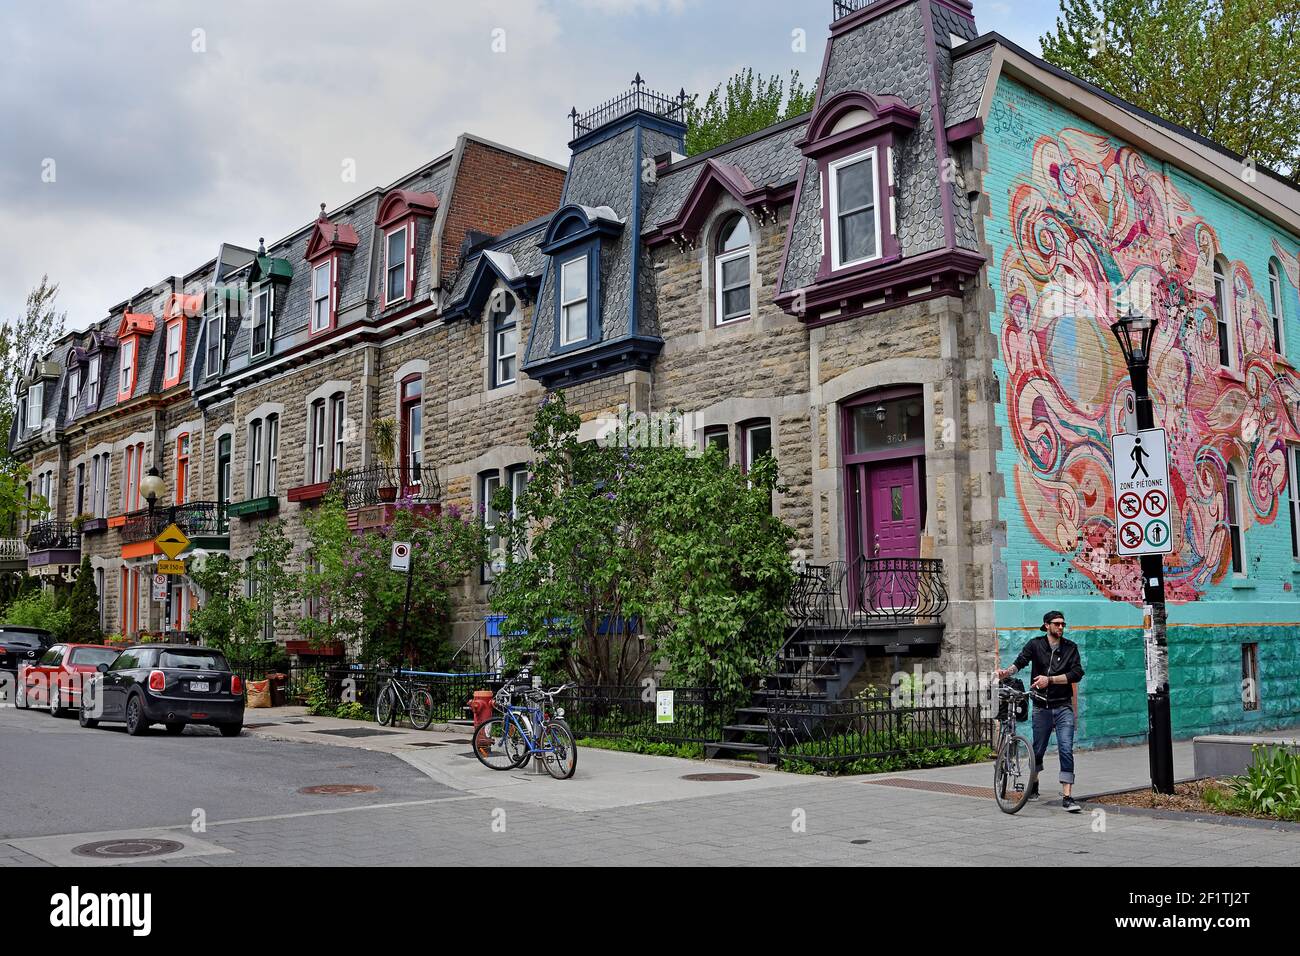 Wohngebiet Mit Häusern In Der Vielfalt Der Architektur, Plateau Mont Royal; Montreal, Kanada Provinz, Quebec. Stockfoto